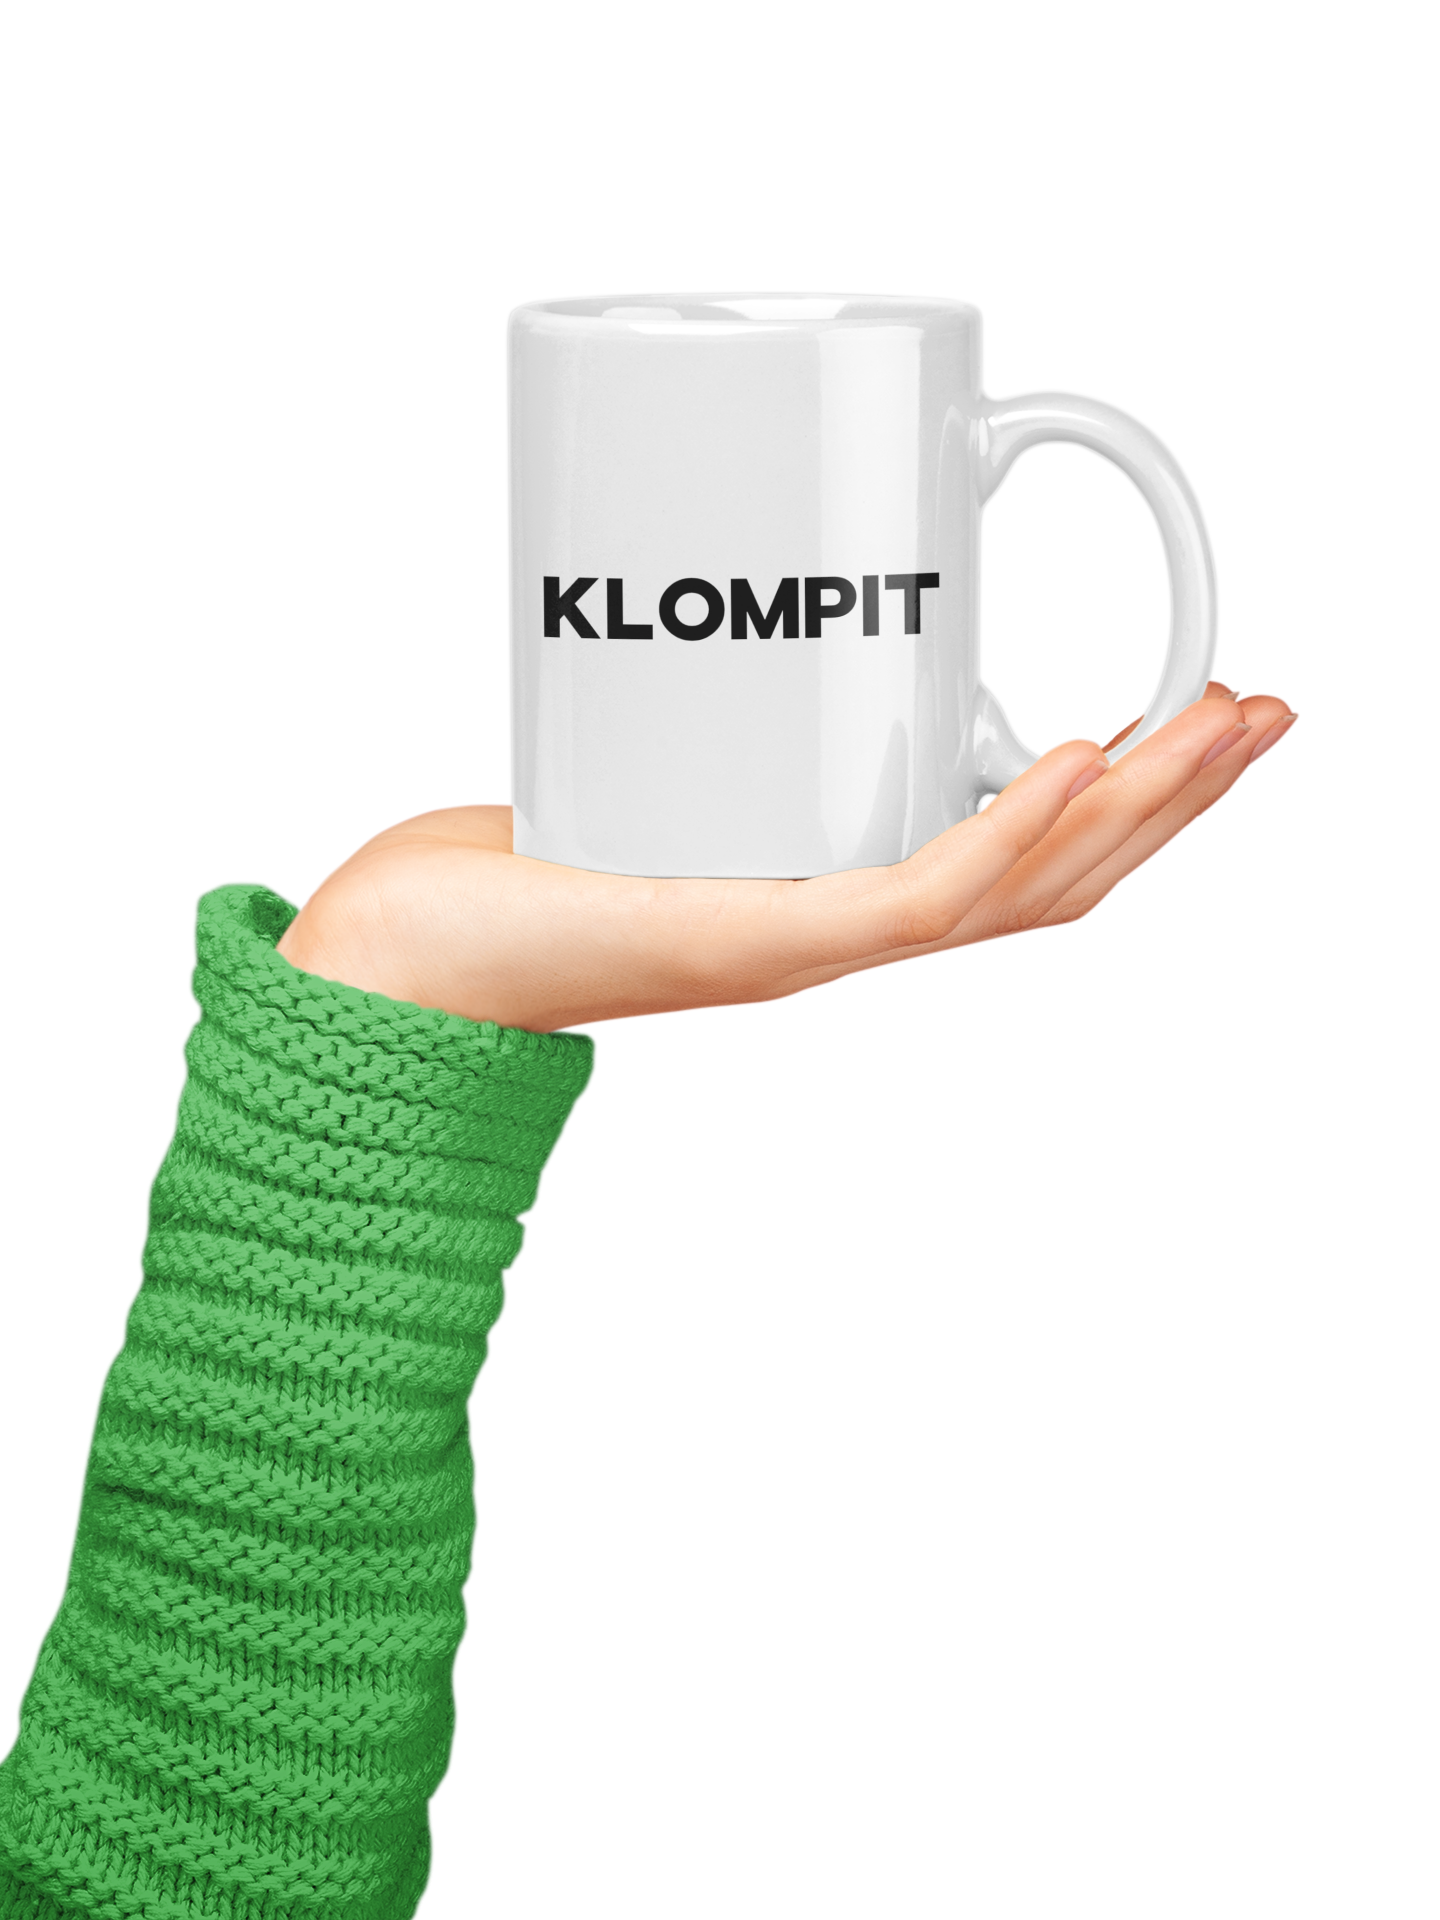 Klompit - Mok